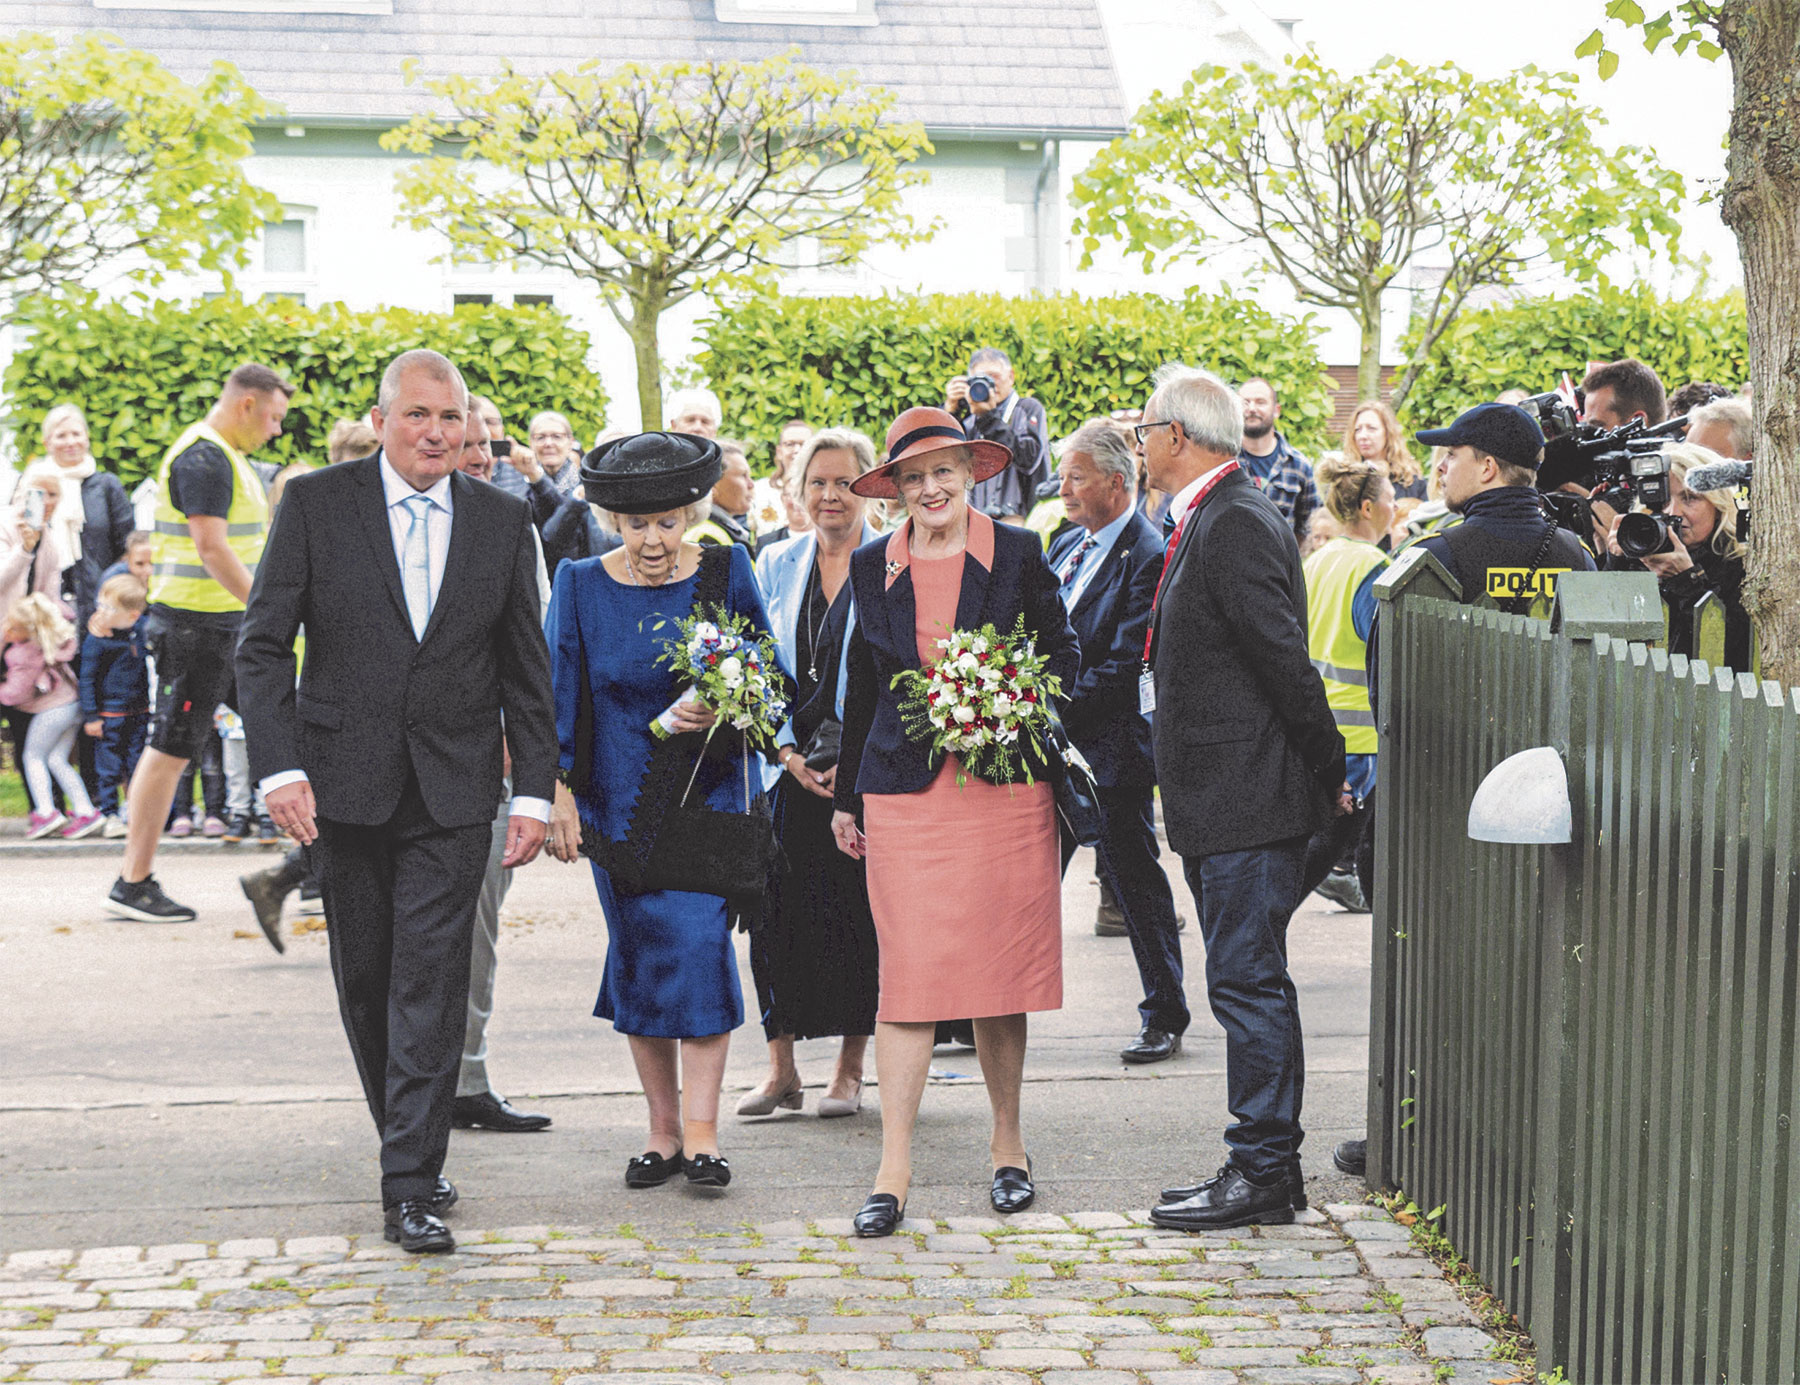 Museumsleder Søren Mentz tog imod Dronning Margrethe og Prinsesse Beatrix ved museets indgang og indledte omvisningen. Arkivfoto: Thomas Mose.